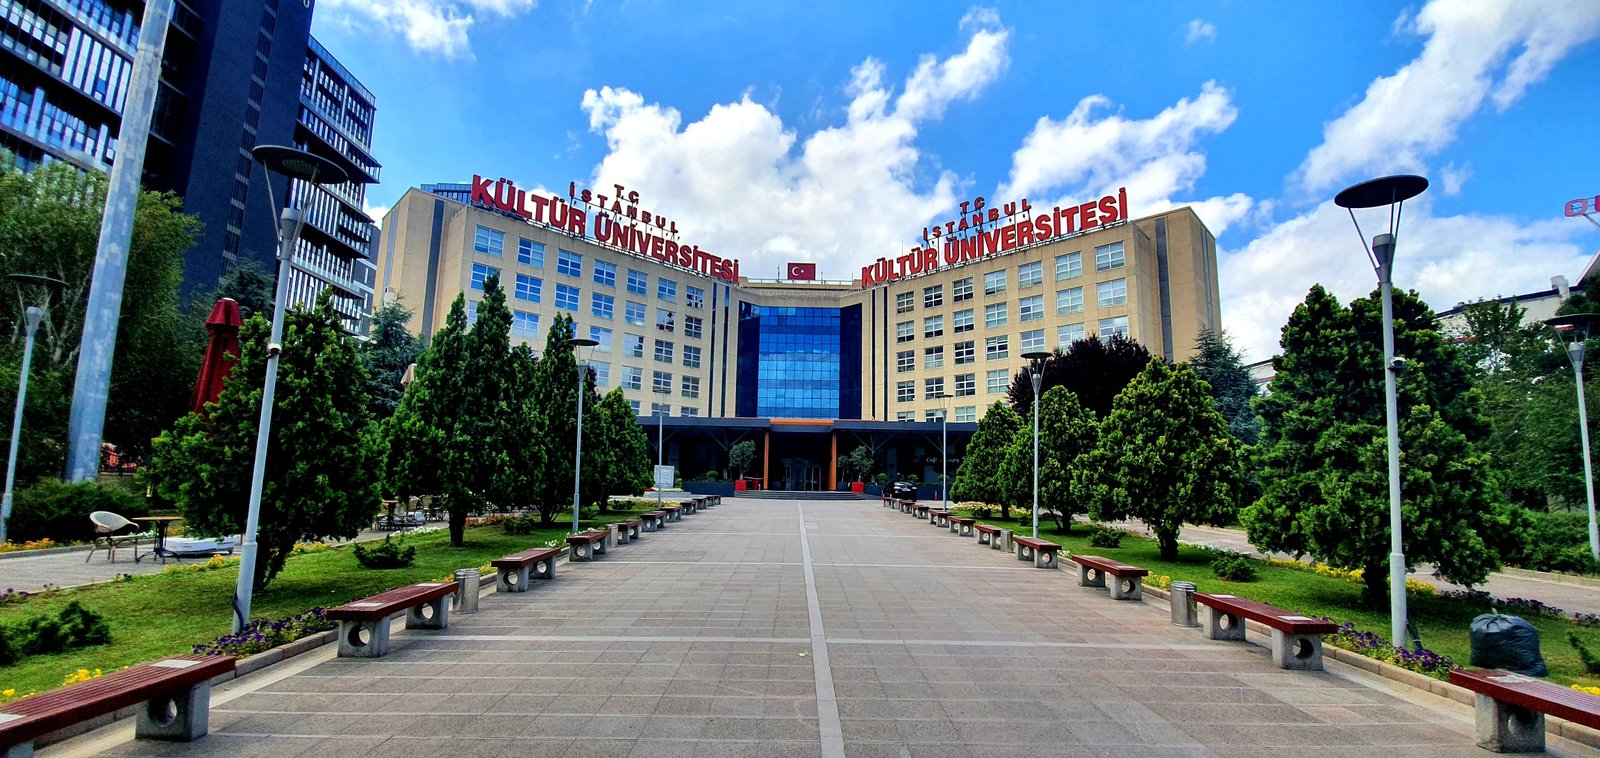 T.C. İstanbul Kültür Üniversitesi